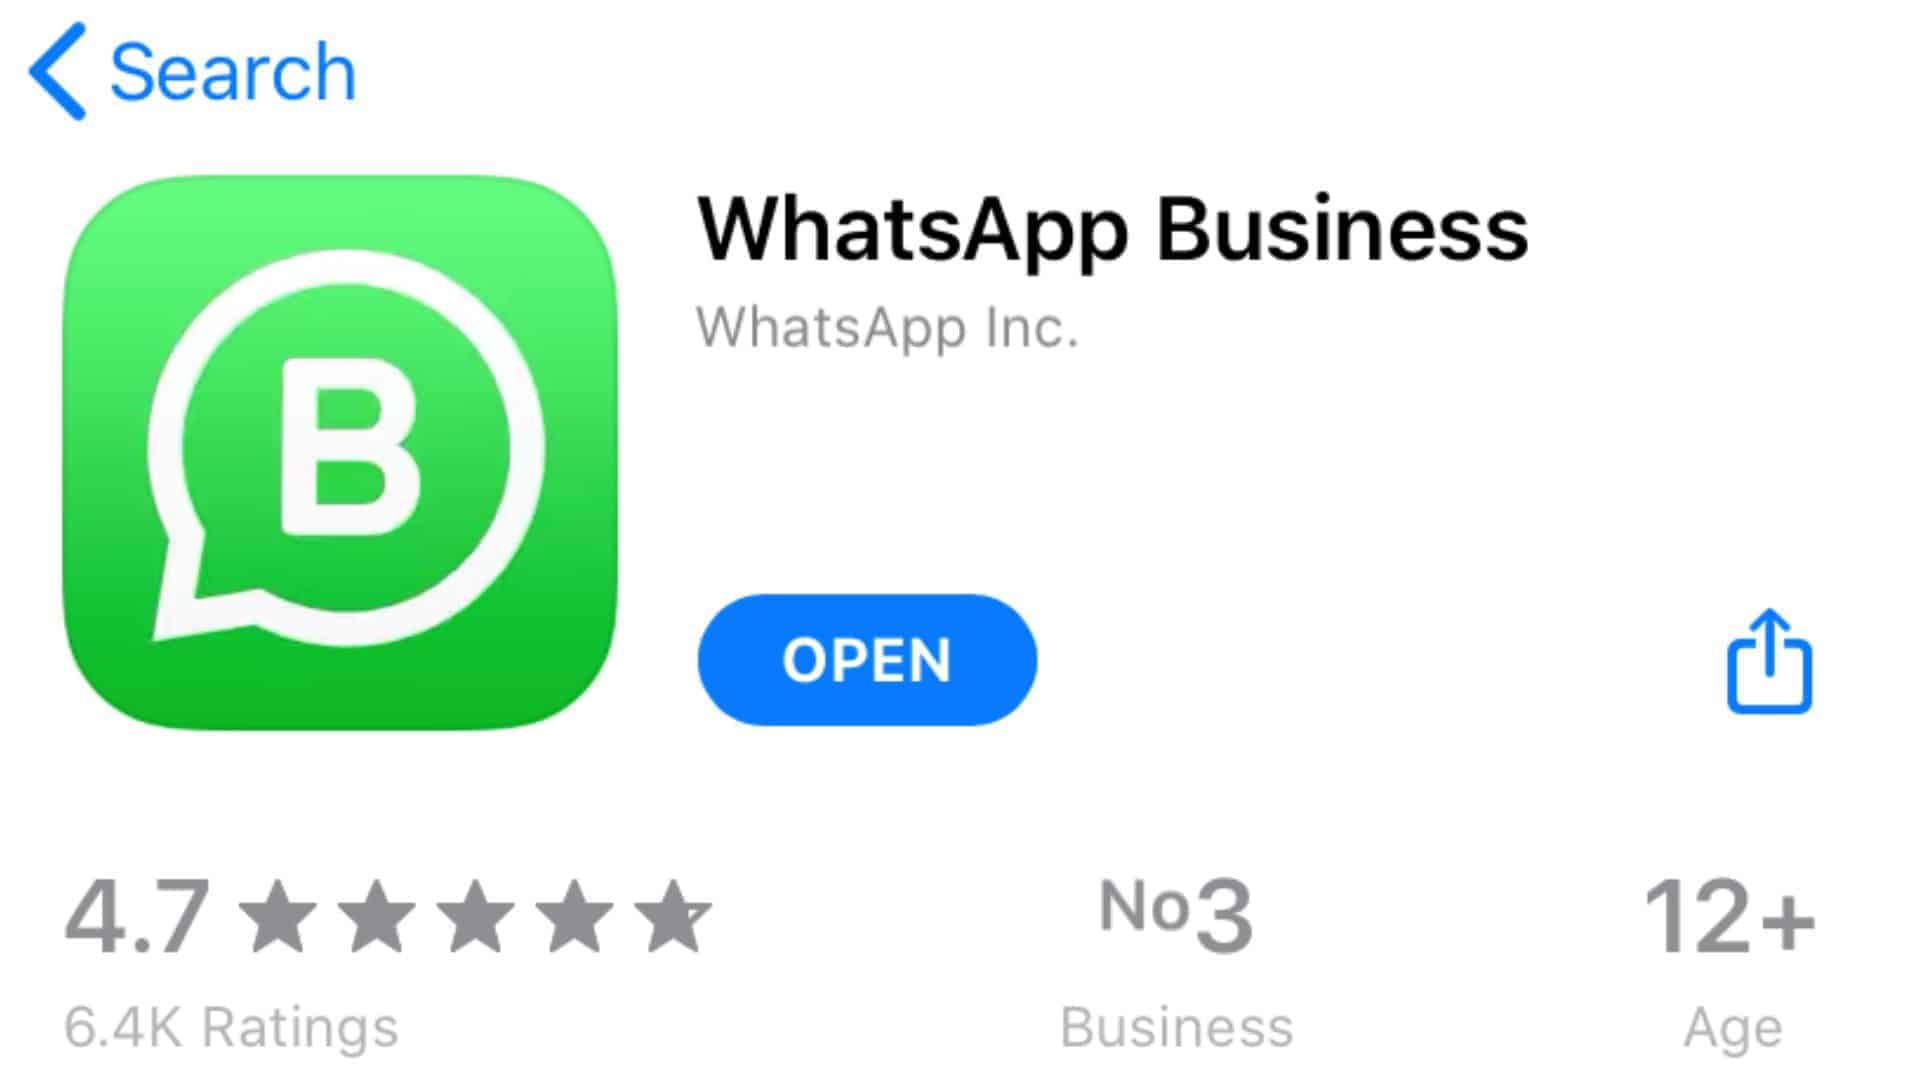 雙開Whatsapp步驟超簡單 官方認證 網店必用 - 雙開Whatsapp步驟超簡單-官方認證 Whatsapp Business(網店必用)